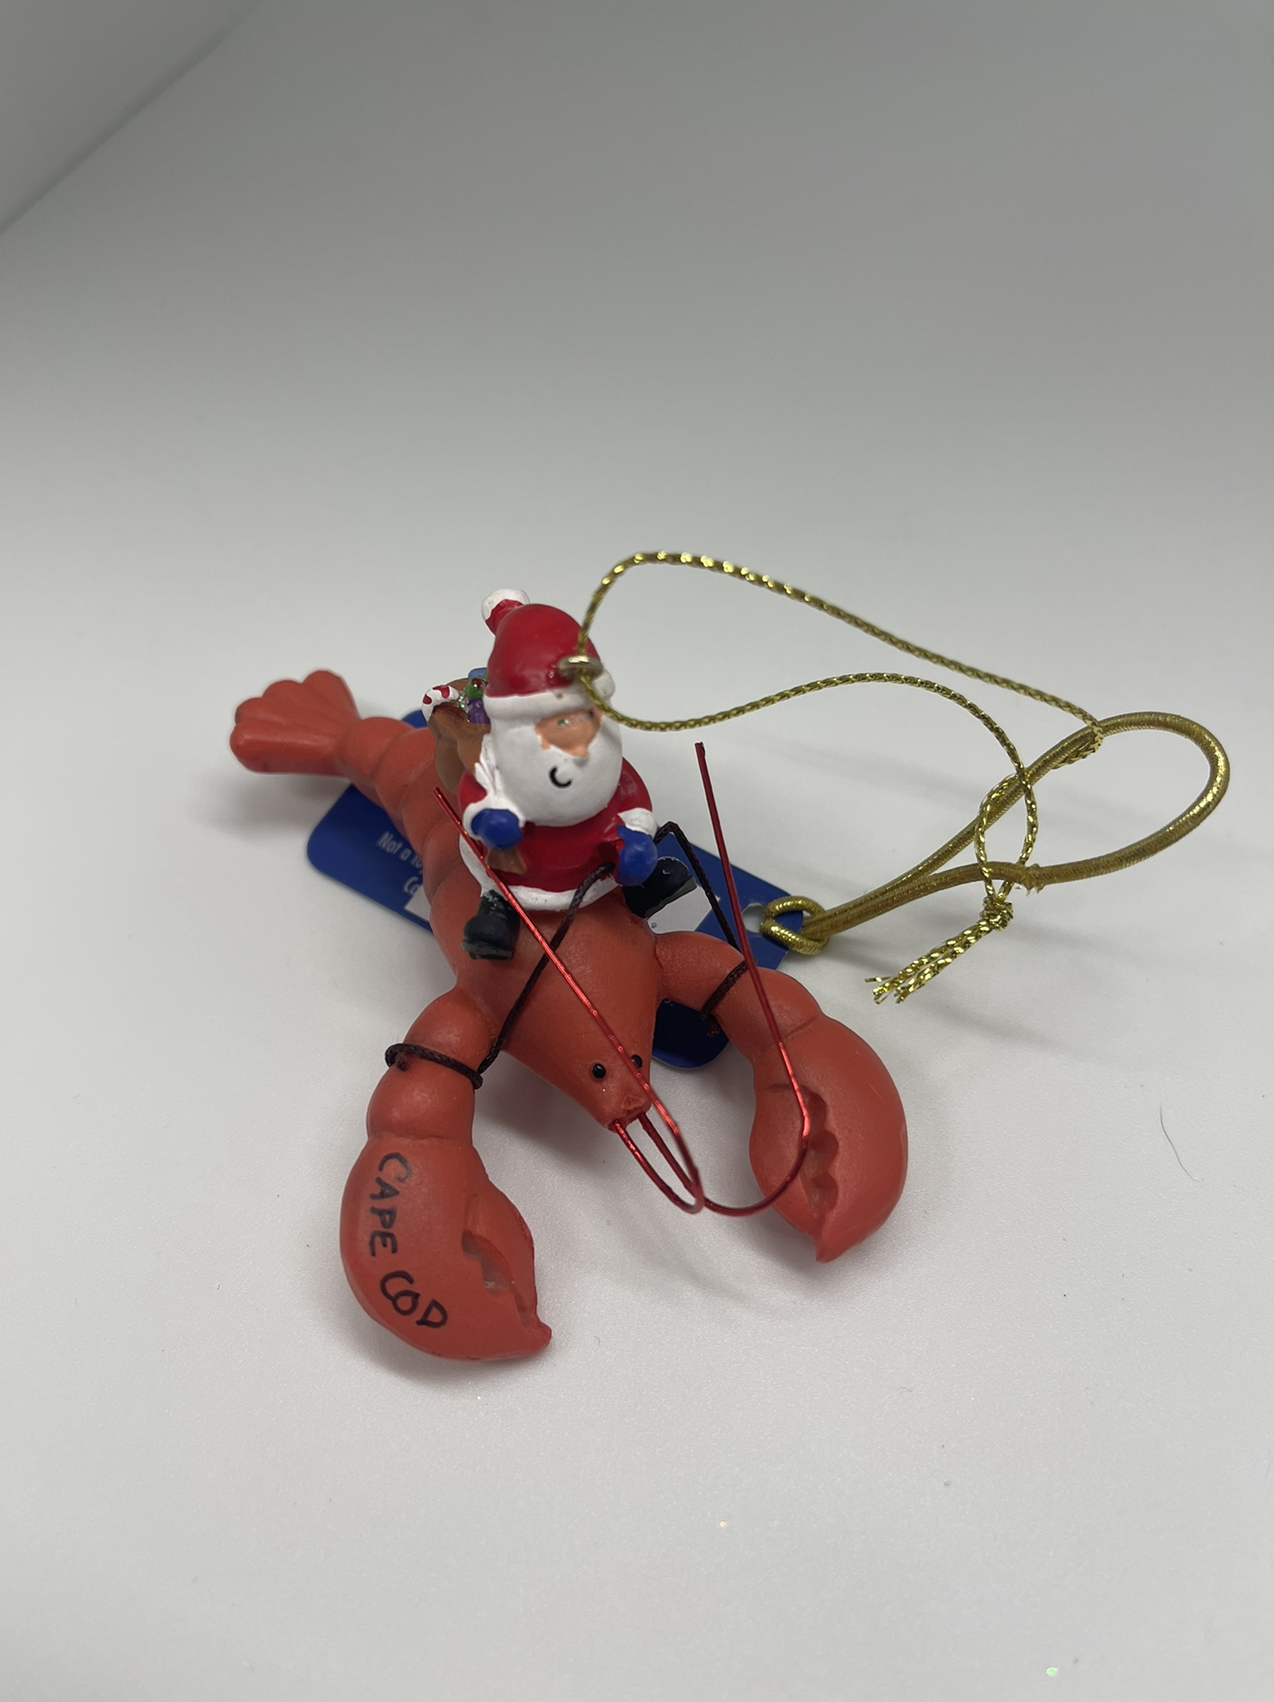 Santa riding a Lobster